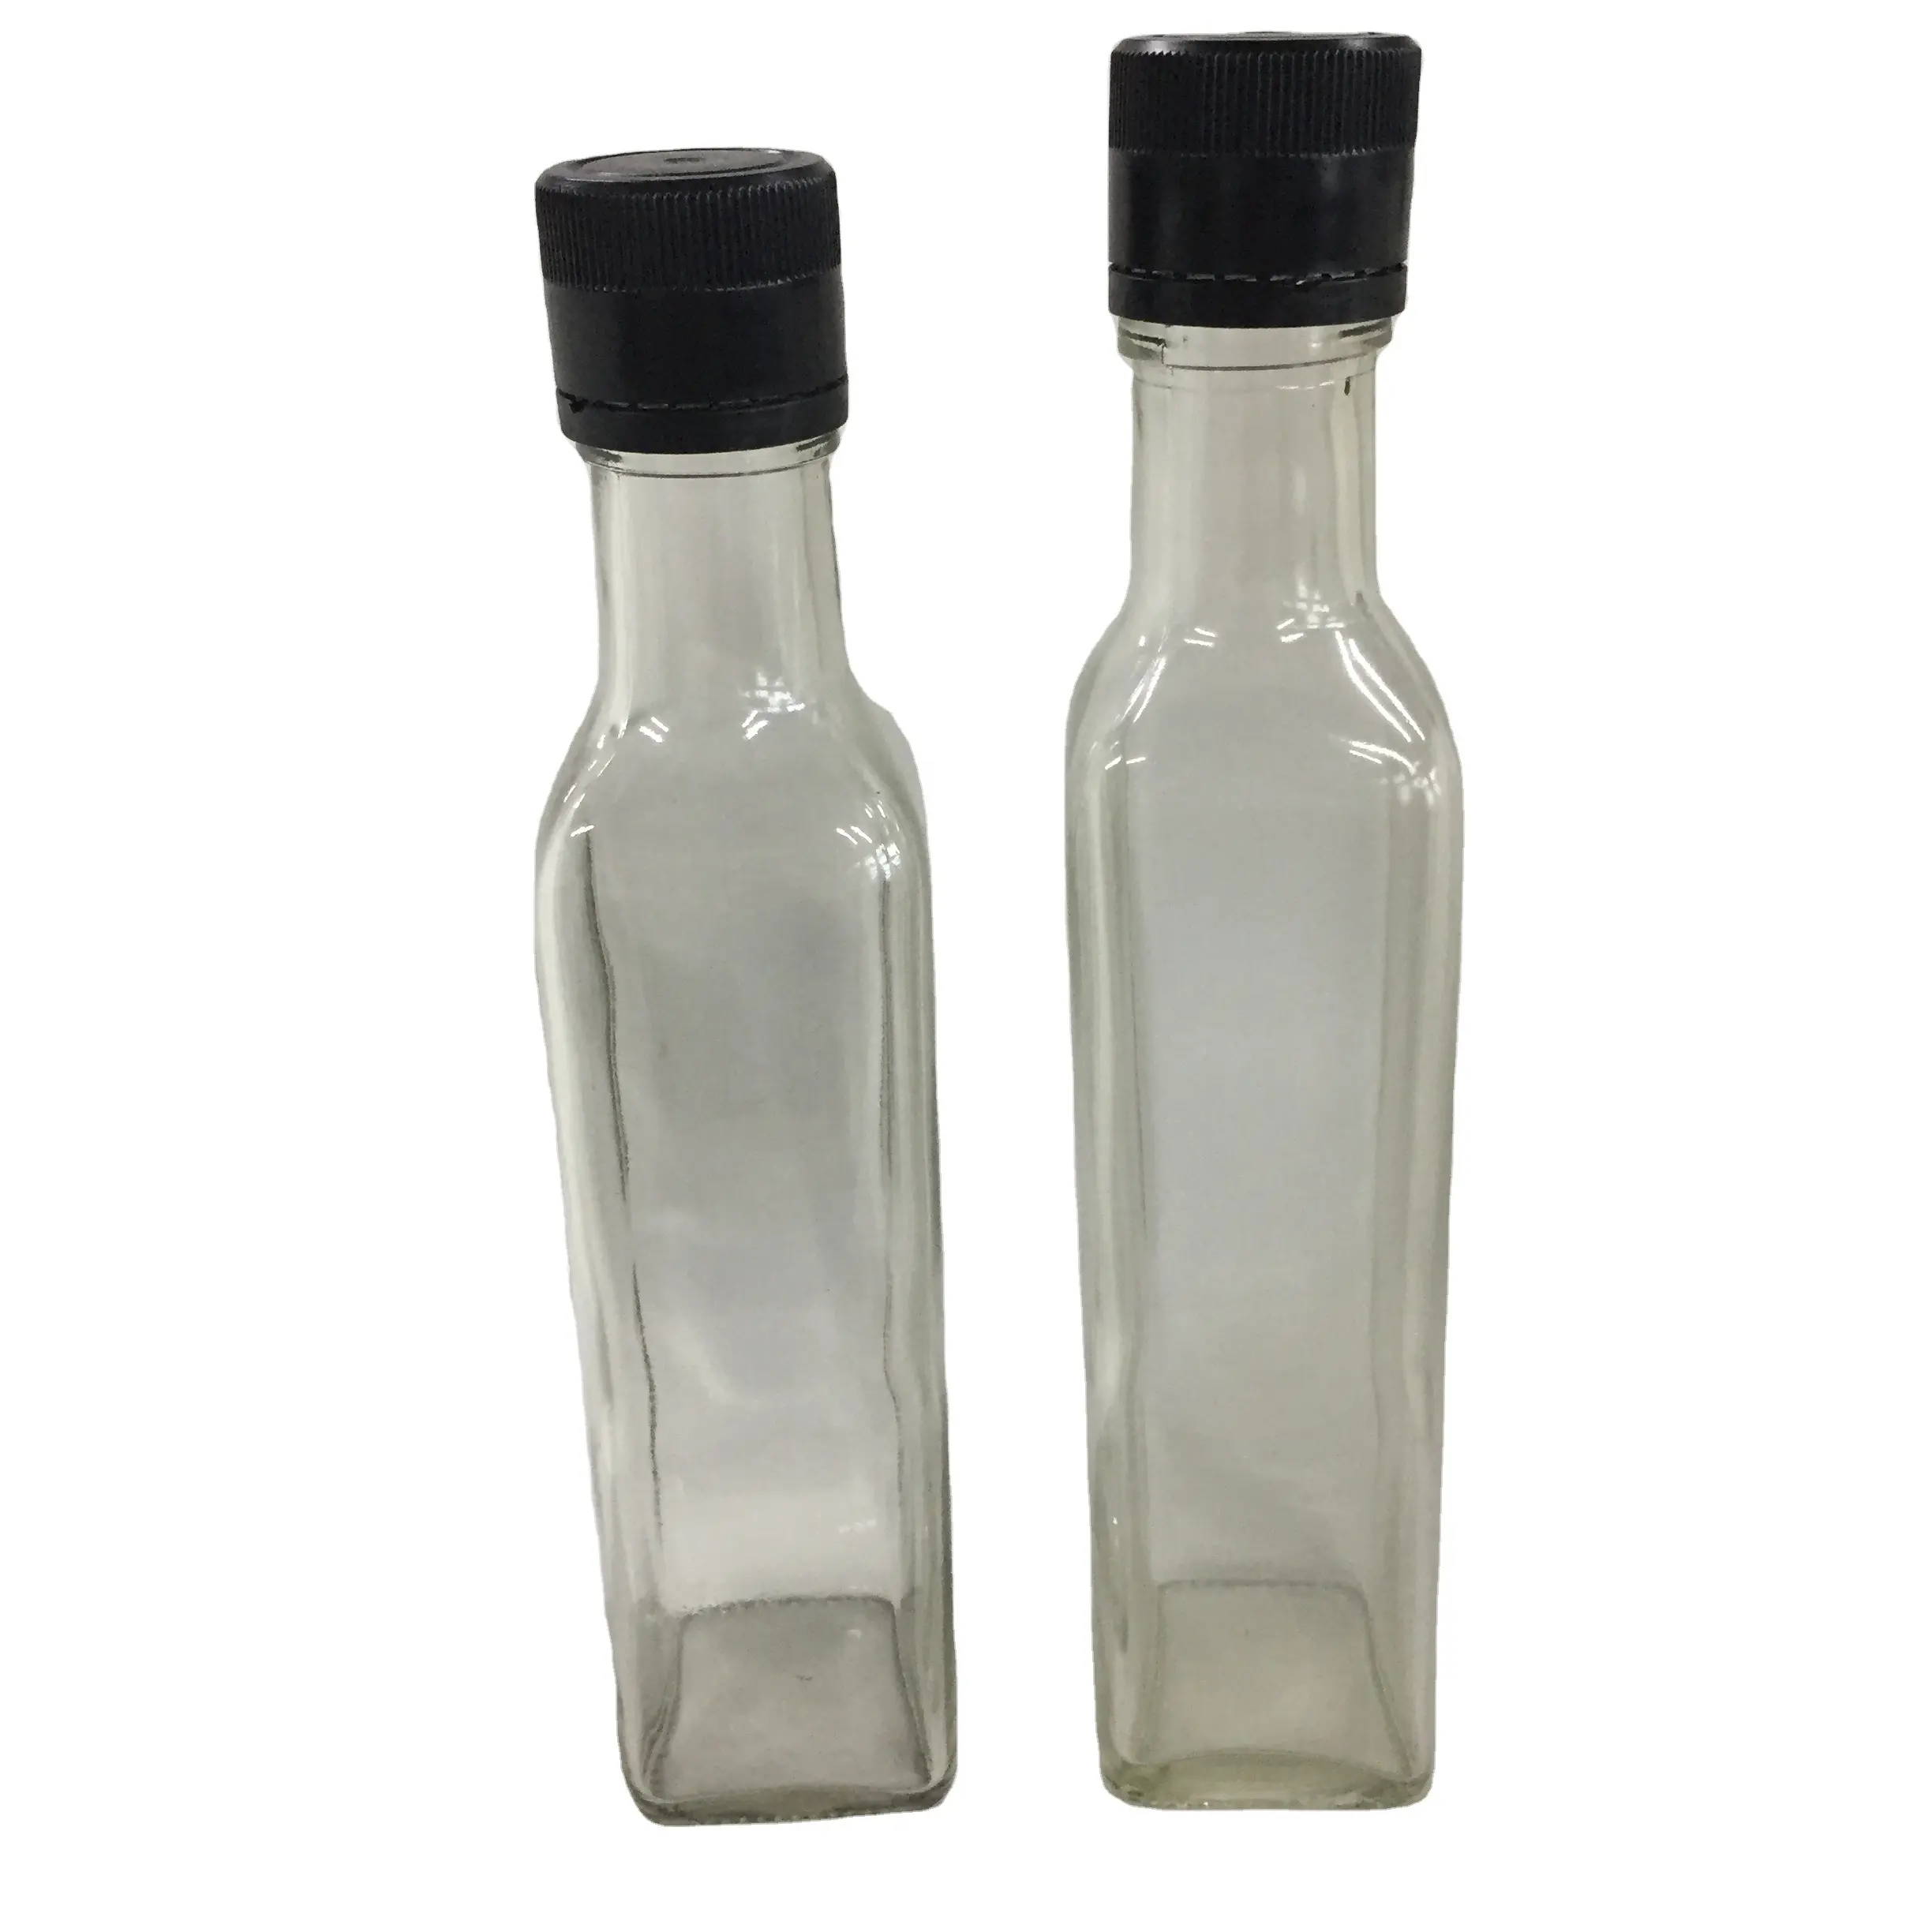 उच्च गुणवत्ता के साथ 500 ml स्पष्ट वर्ग कांच की बोतल जैतून का तेल के लिए एक सेट के ढक्कन